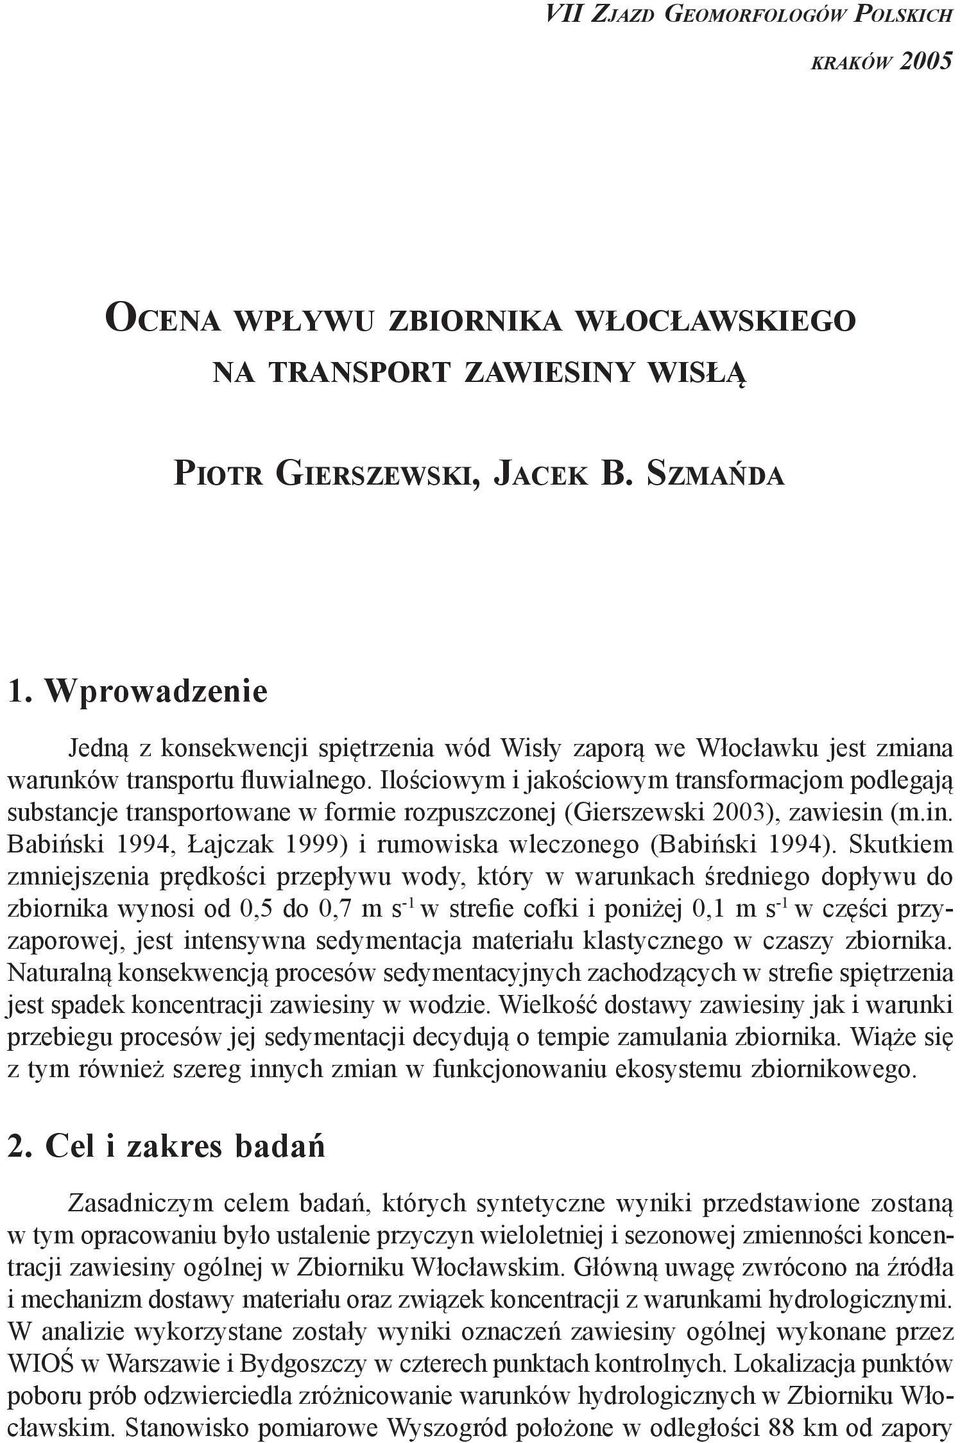 Ilościowym i jakościowym transformacjom podlegają substancje transportowane w formie rozpuszczonej (Gierszewski 2003), zawiesin (m.in. Babiński 1994, Łajczak 1999) i rumowiska wleczonego (Babiński 1994).